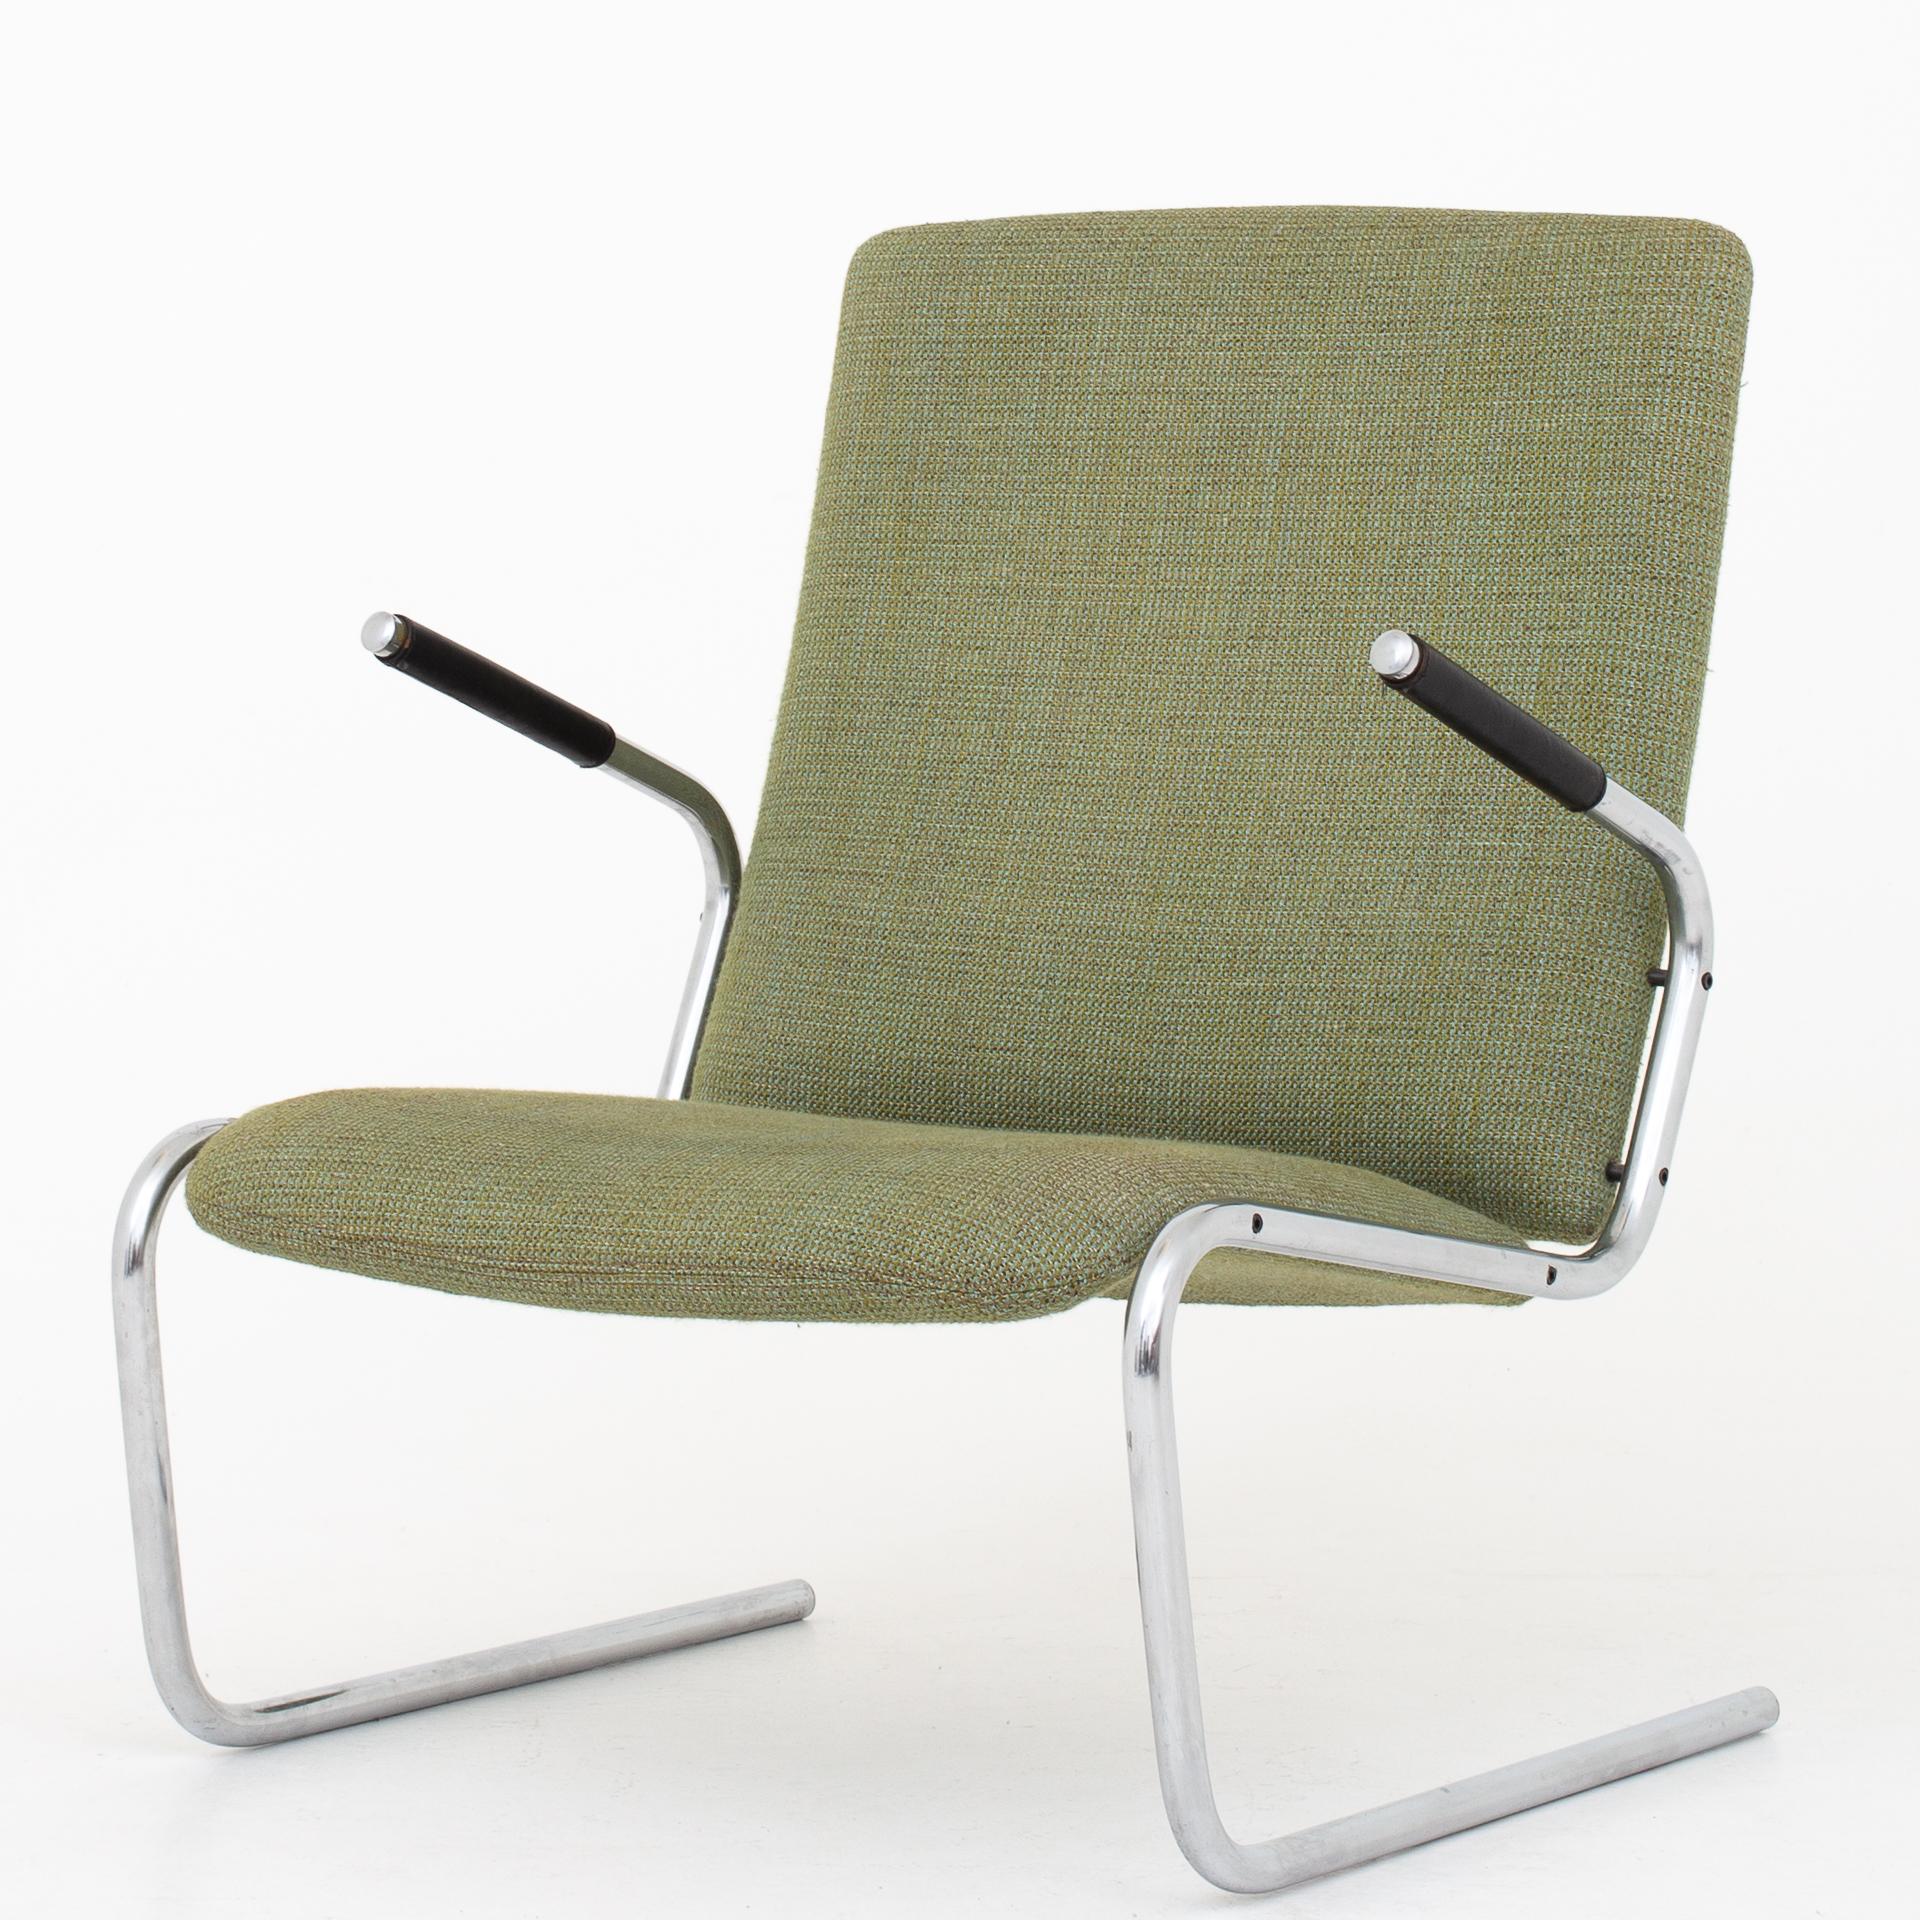 Sessel mit Freischwingergestell aus verchromtem Stahl, gepolstert mit grüner Wolle und schwarzen Lederarmlehnen. Hersteller Kusch & Co.